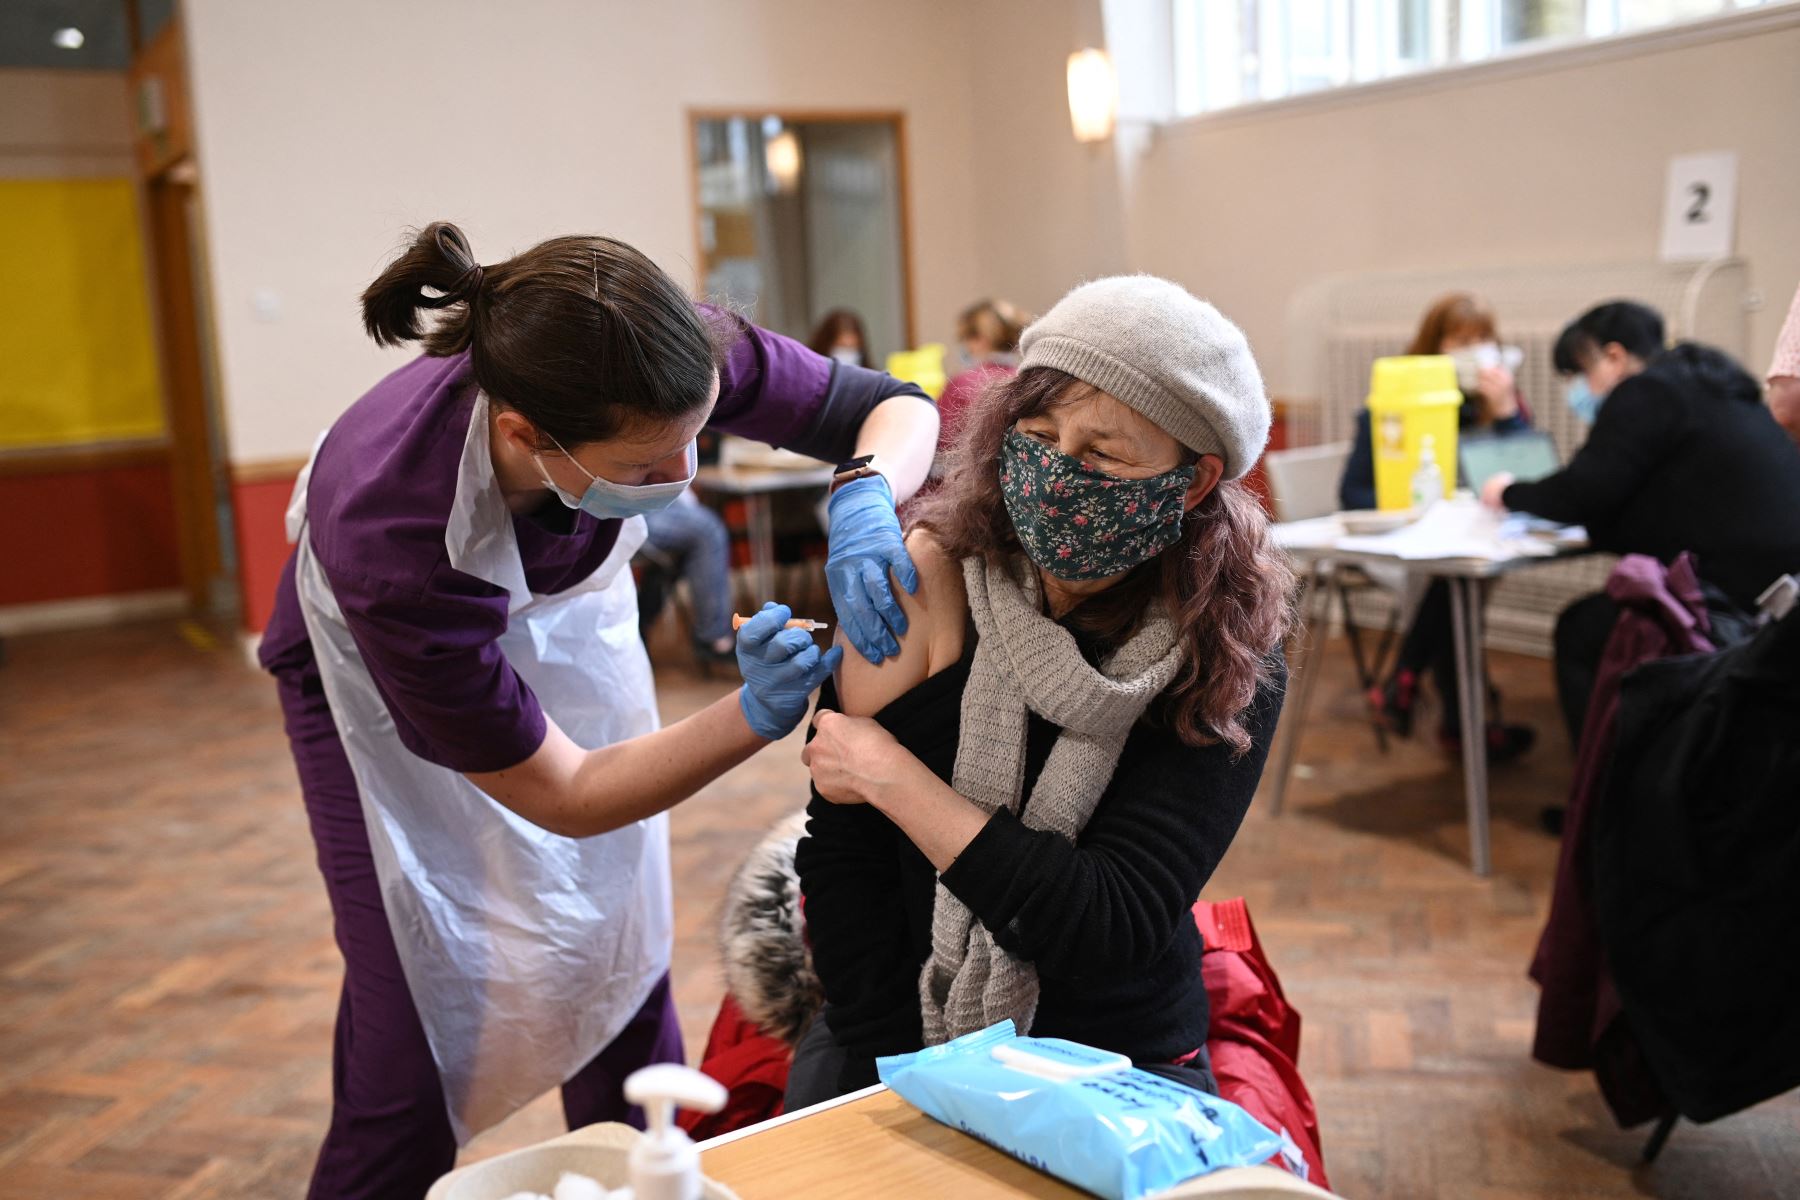 La doctora Kate Martin administra una inyección de la vacuna AstraZeneca Oxford Covid-19 a un paciente en el centro de vacunación establecido en la iglesia de St Columba en Sheffield, en el norte de Inglaterra, el 20 de febrero de 2021. Foto: AFP